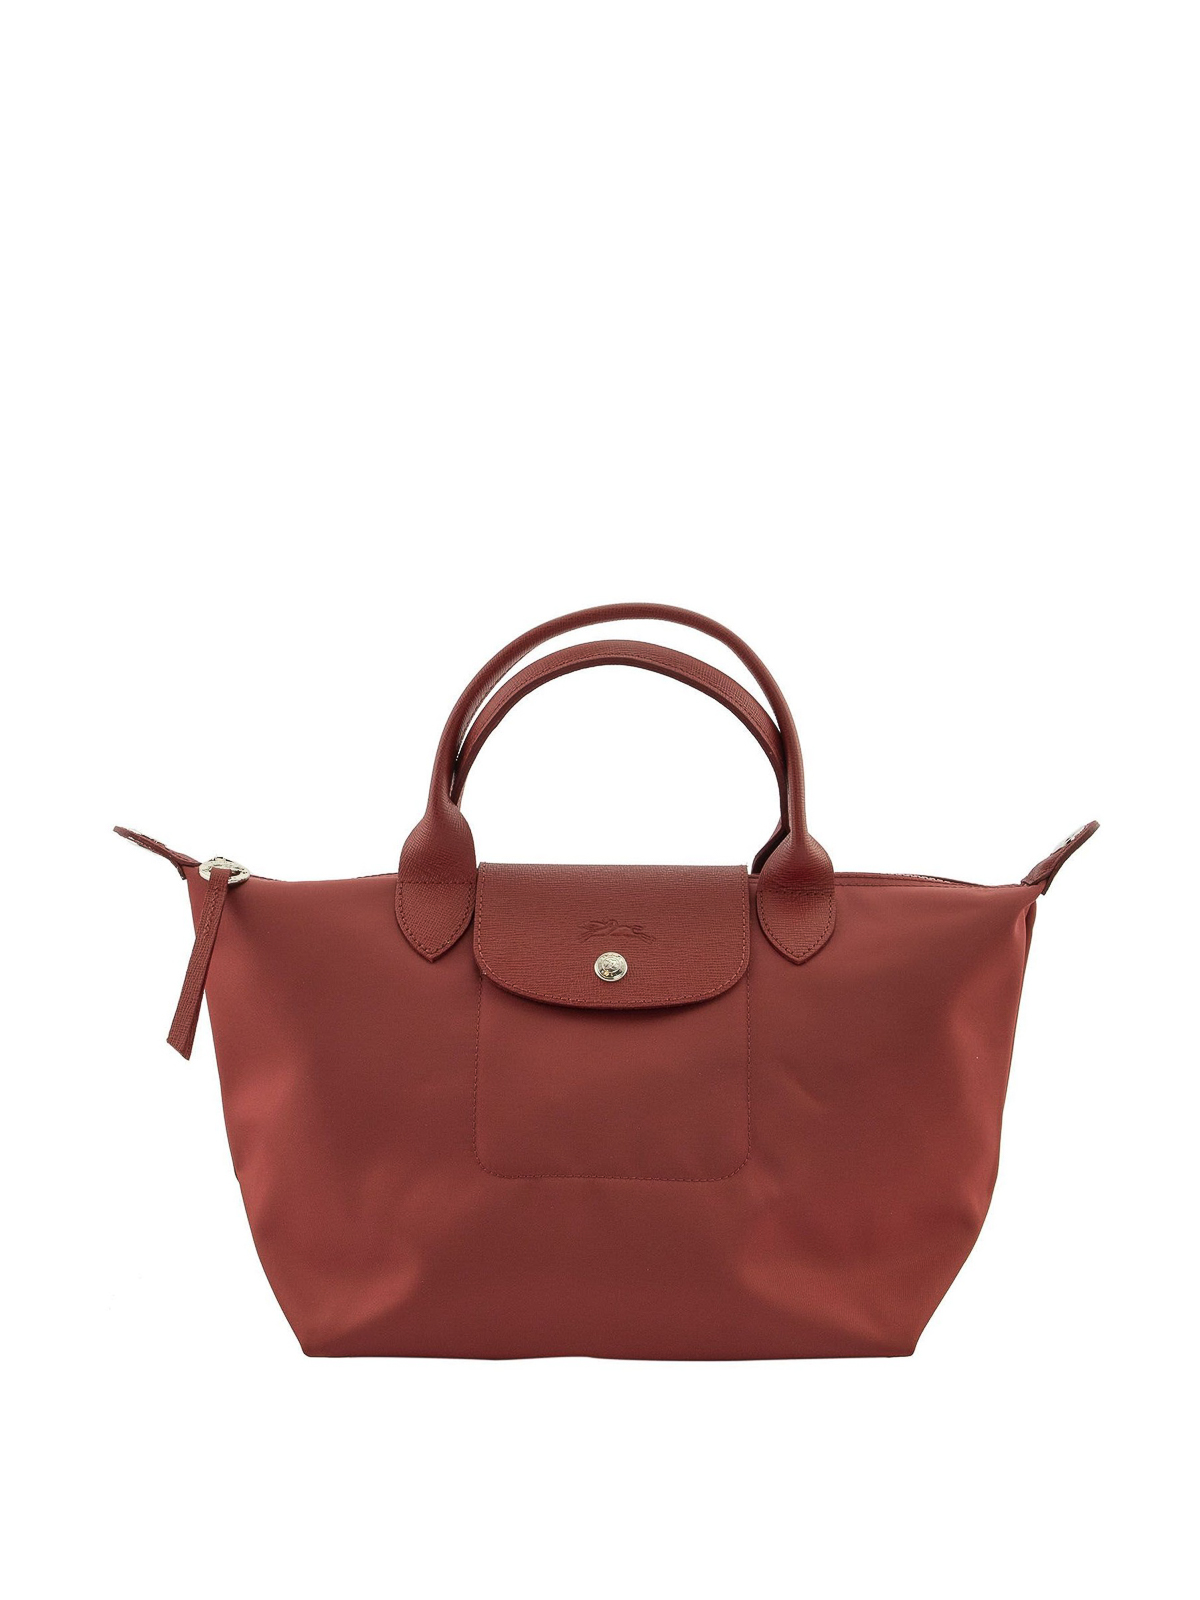 Authentic Longchamp Le Pliage Neo Bucket, Women's Fashion, Bags